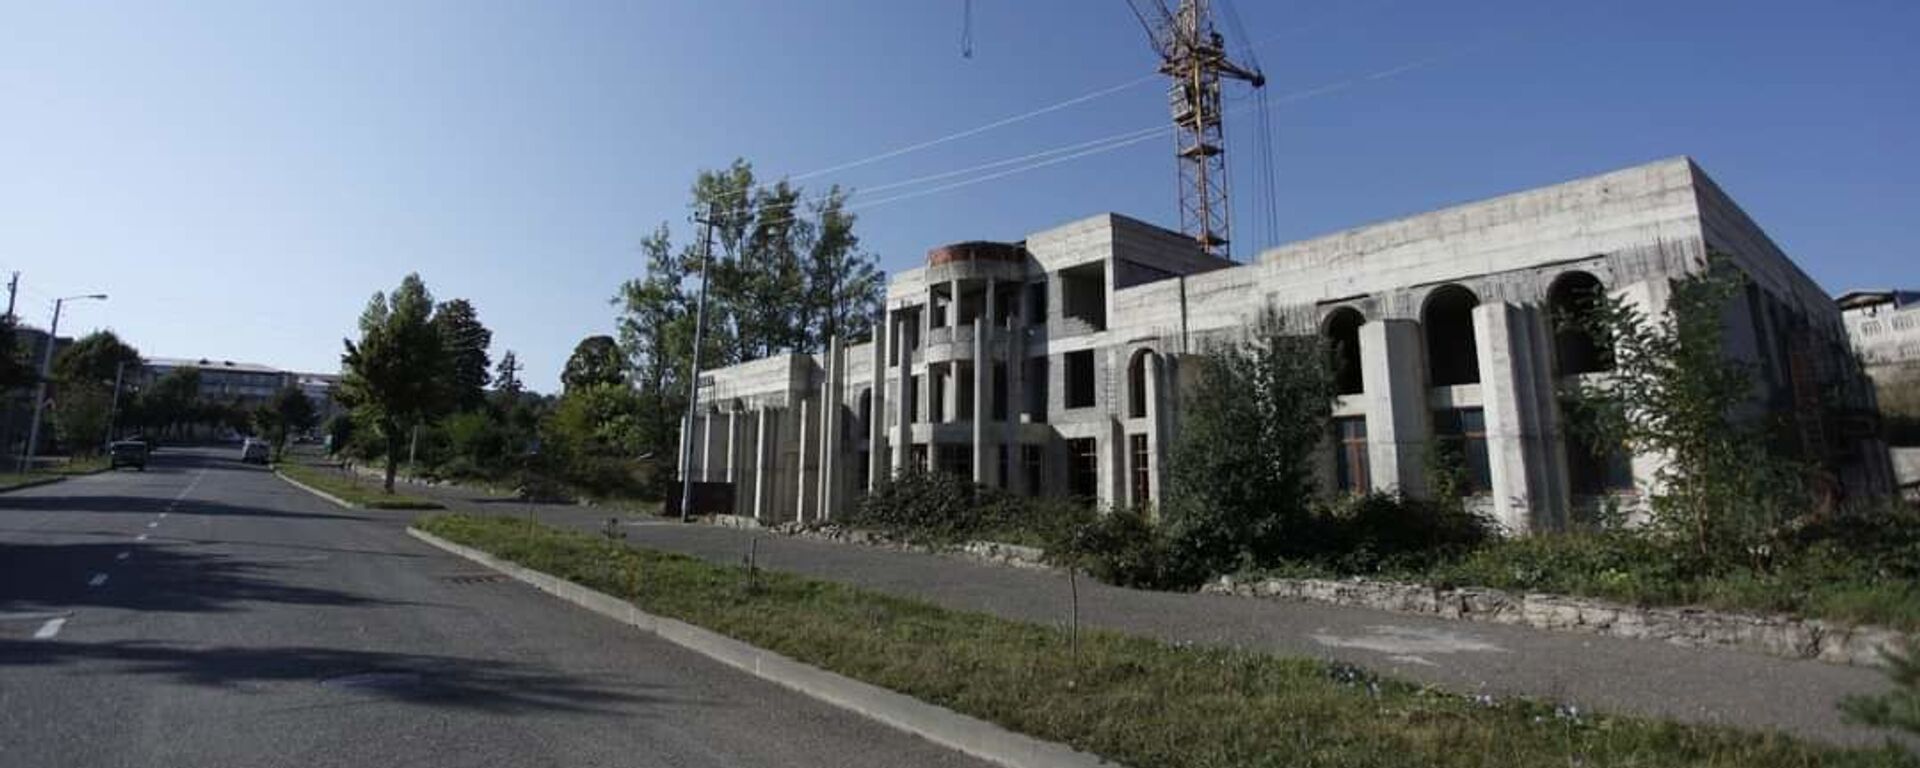 Շուշիում կառուցվող խորհրդարանի շենքը. արխիվային լուսանկար - Sputnik Արմենիա, 1920, 05.01.2022